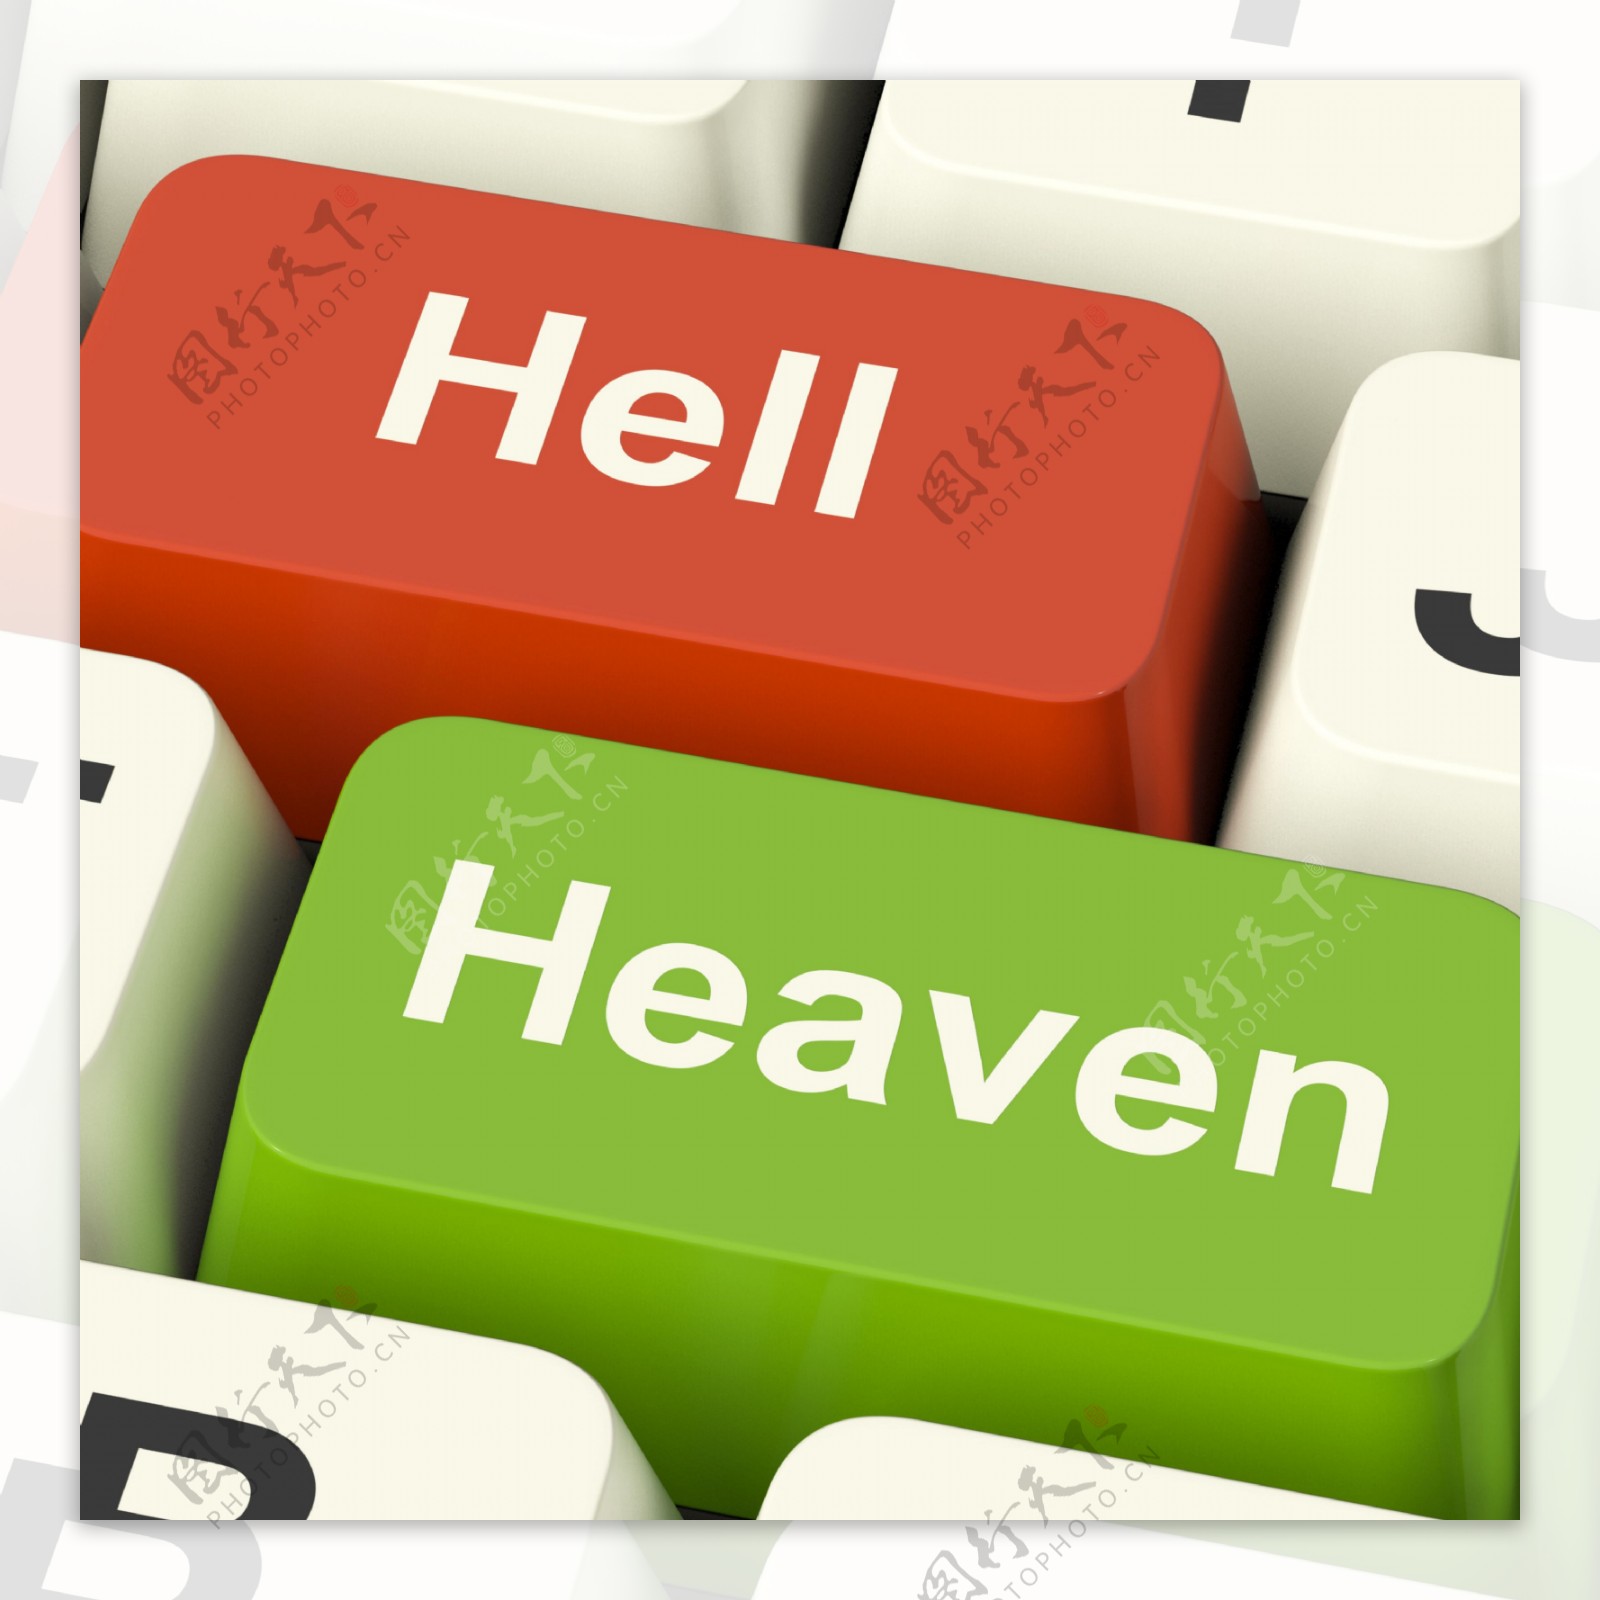 天堂与地狱的电脑钥匙表现出善与恶之间在线选择